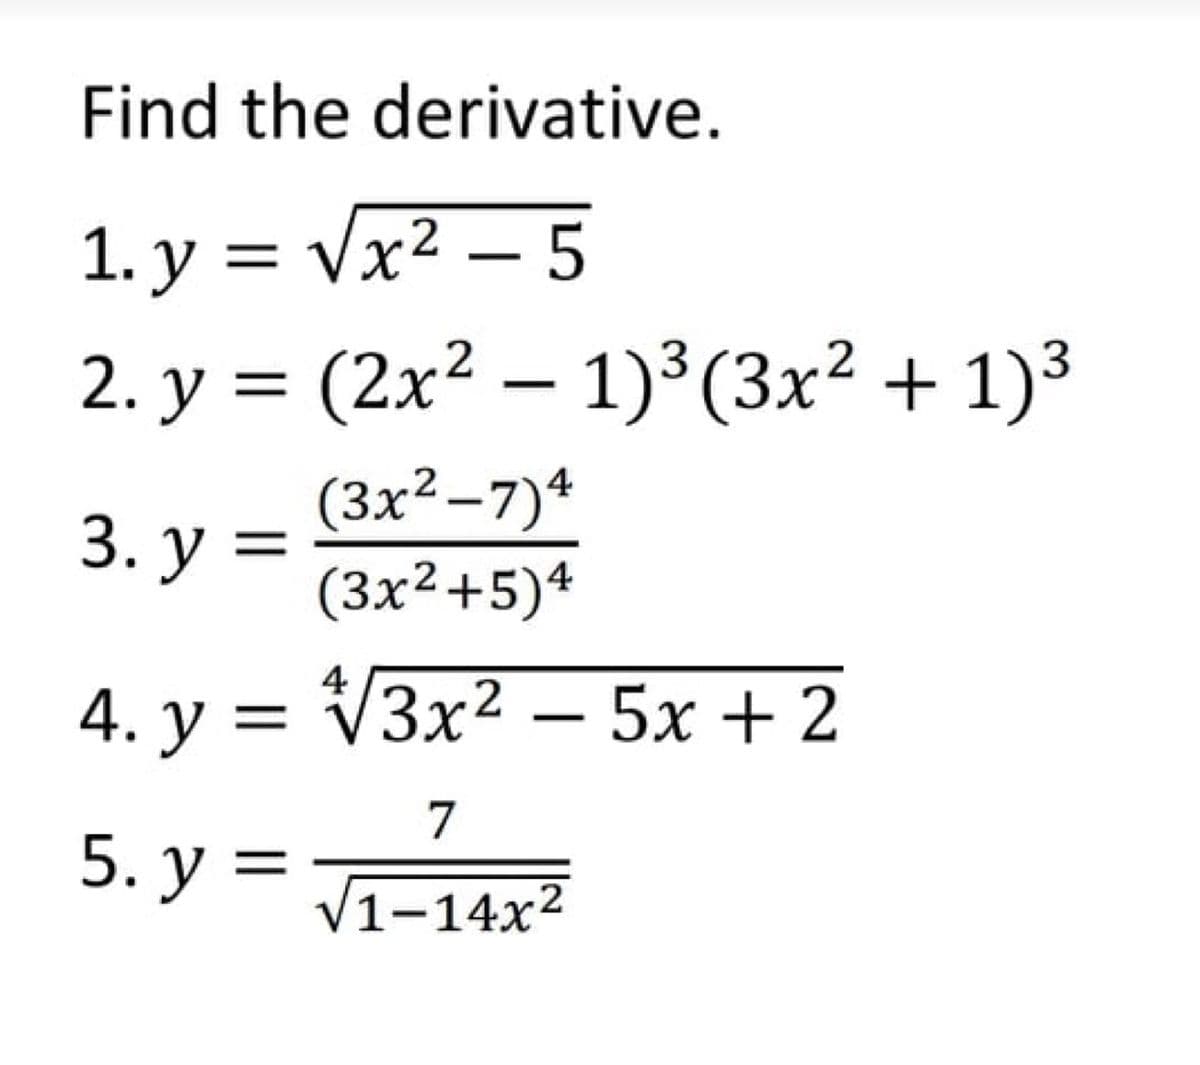 Find the derivative.
1. у 3D Vx2 — 5
2. у %3 (2x2 — 1)3(3x? + 1)3
(3x²–7)4
(3x²+5)4
|
3. у %3
2
4
4. у %3
VЗx2 — 5х + 2
7
5. у 3
V1-14x2
